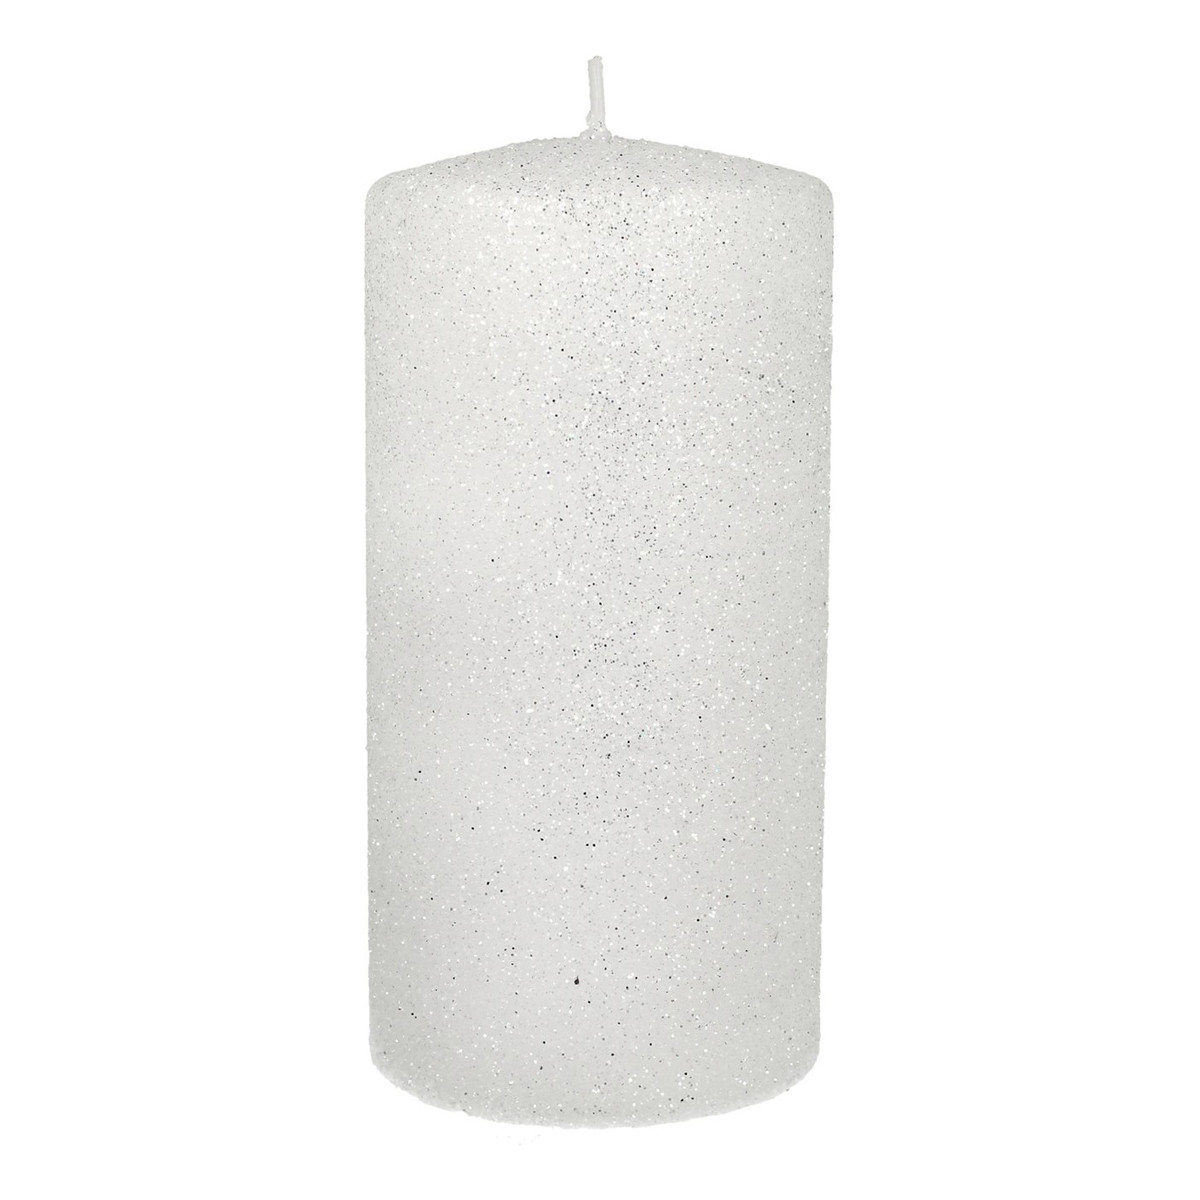 Artman Candles ARTMAN Świeca ozdobna Glamour biała - walec mały